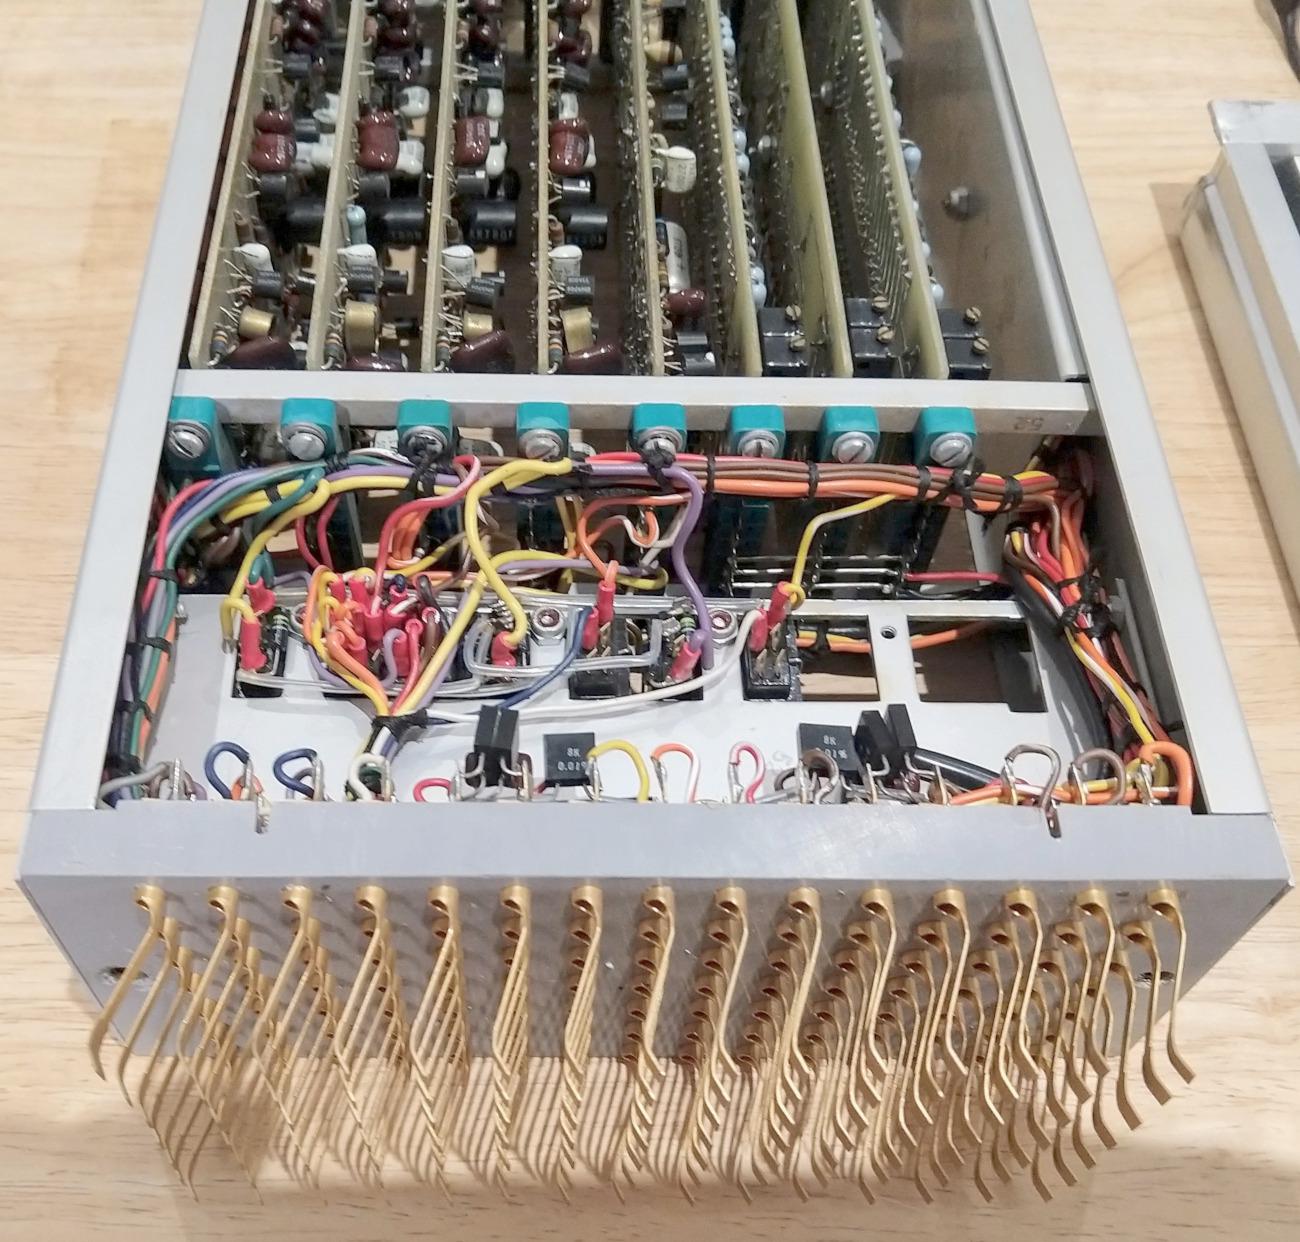 Реверс-инжиниринг малошумящих операционных усилителей из аналогового компьютера 1969 года - 6